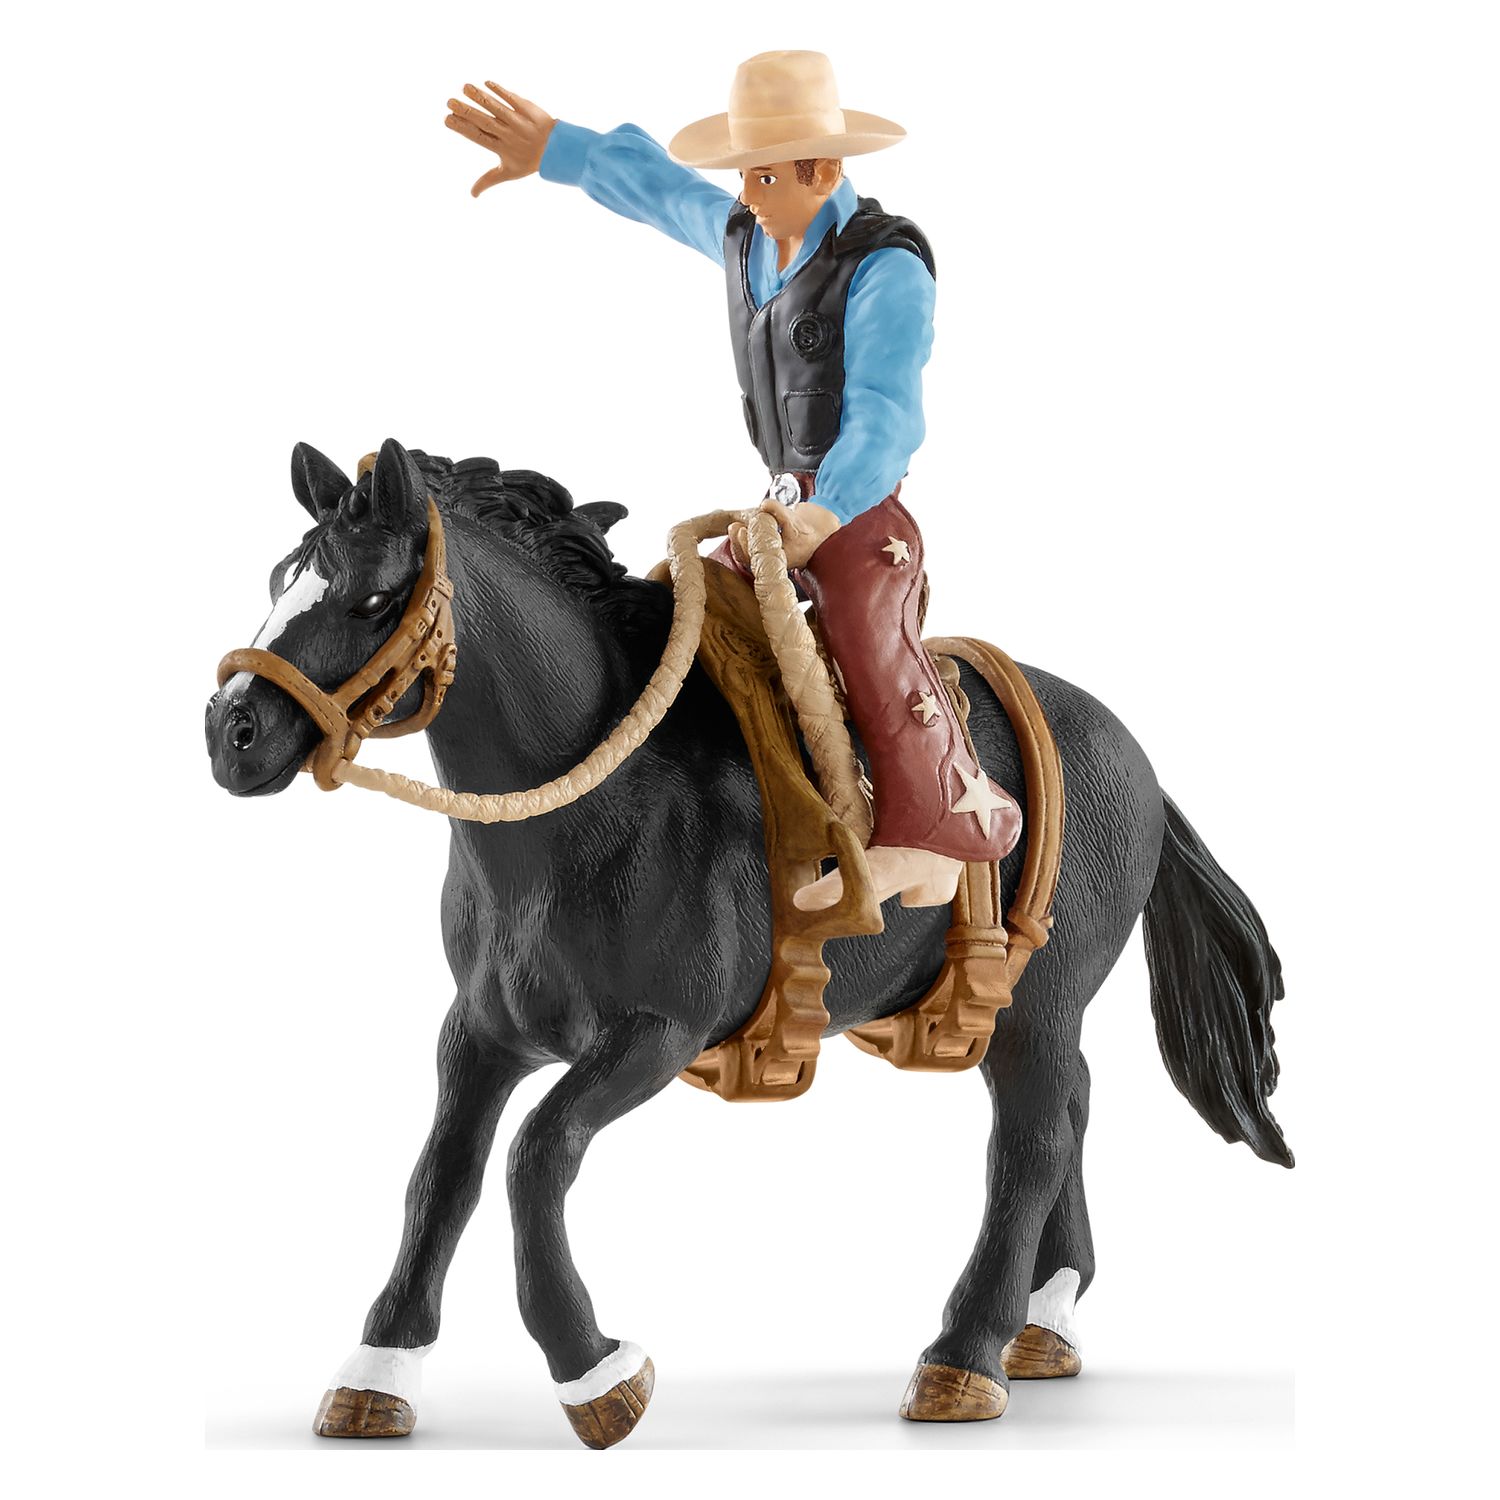 Schleich Saddle bronc riding mit Cowboy 